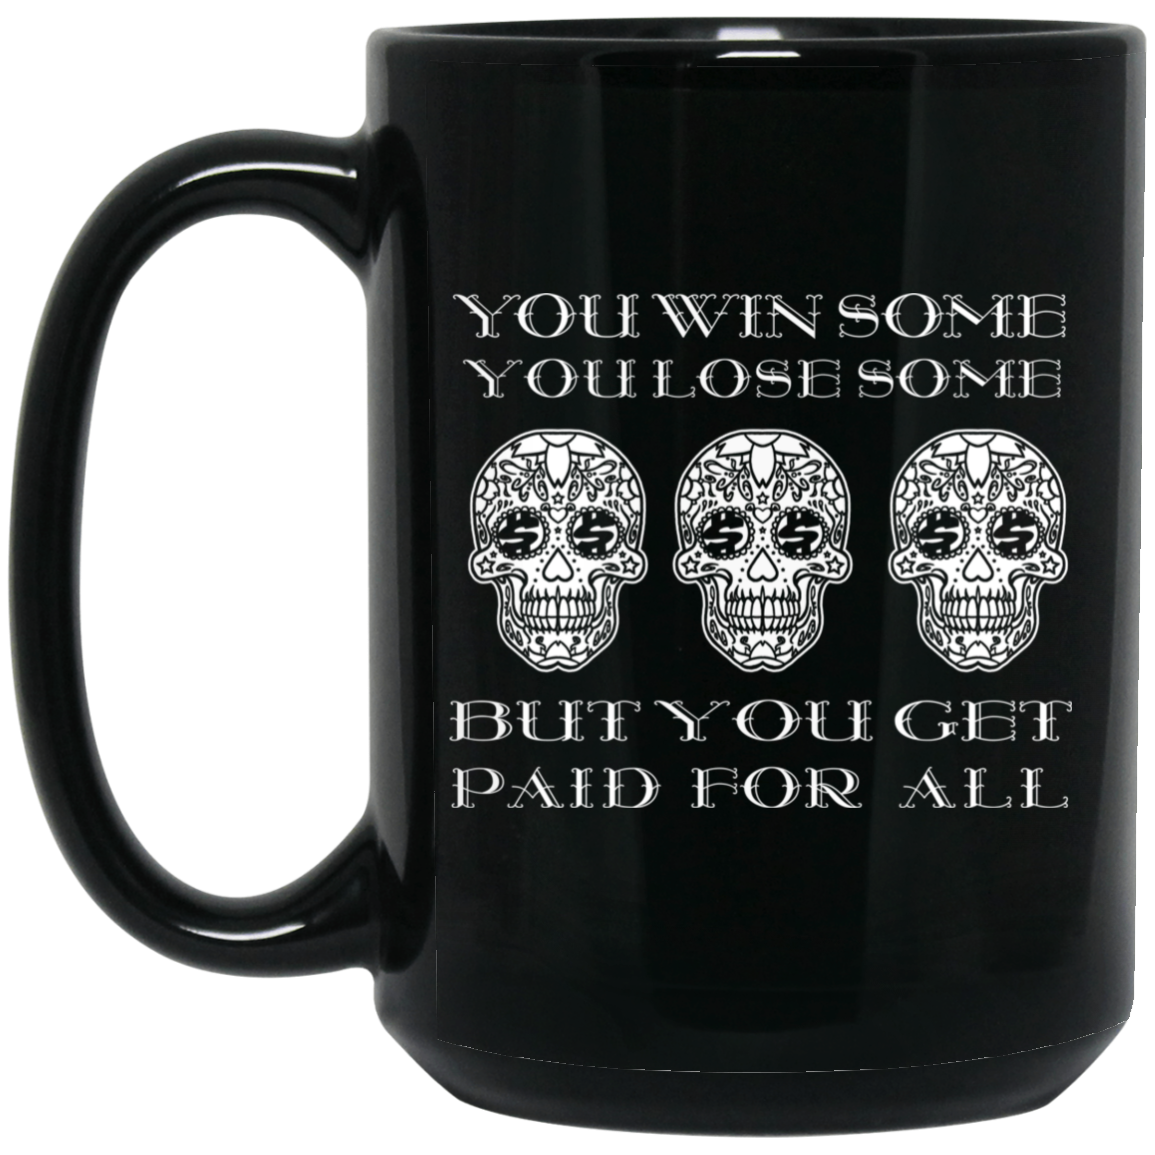 ArtichokeUSA Custom Design. You Win Some, You Lose Some, But You Get Paid For All. 15 oz. Black Mug